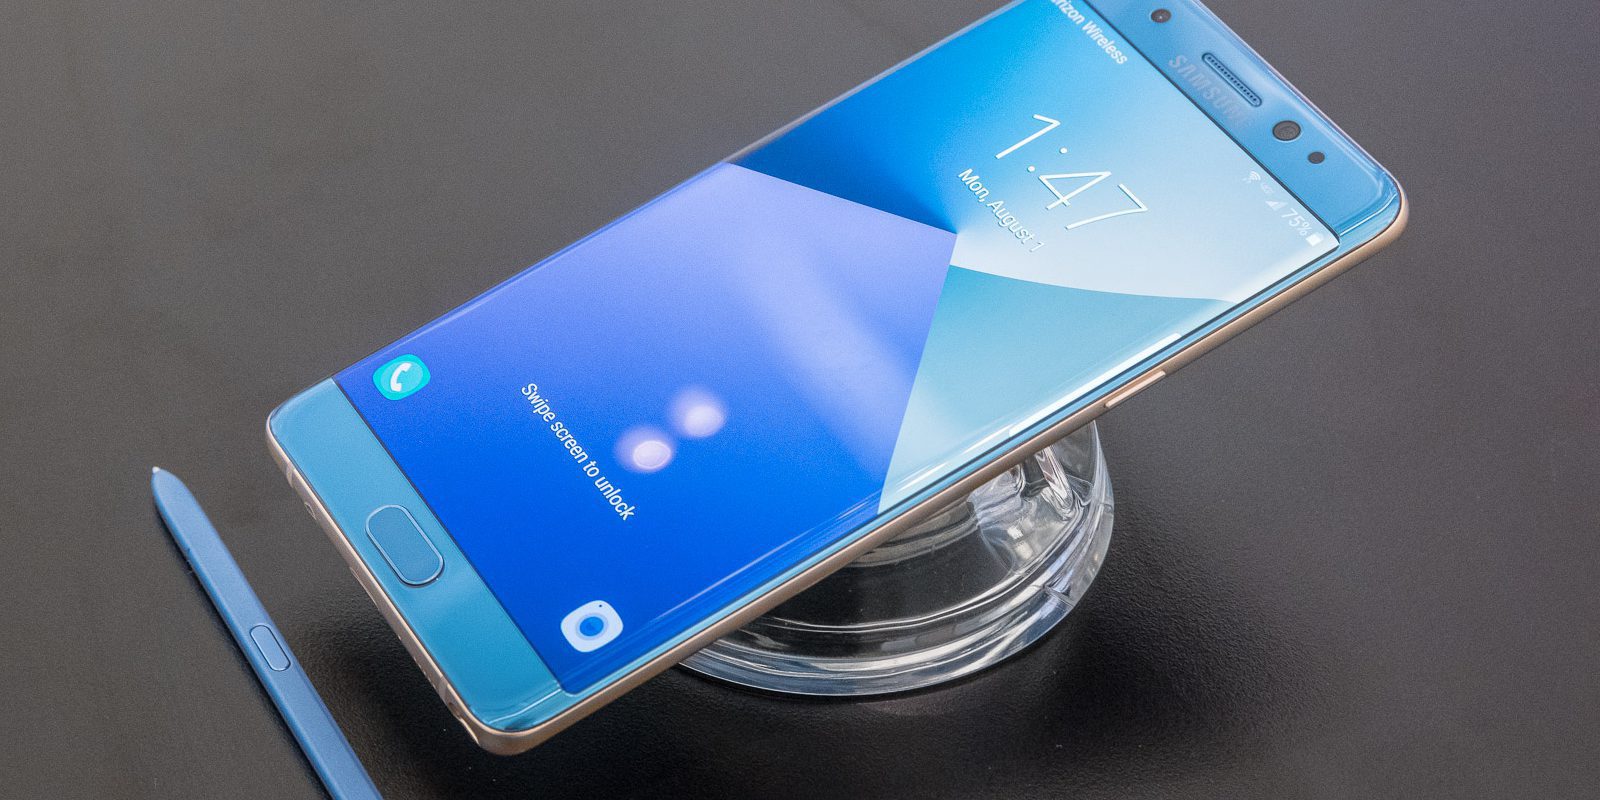 El Samsung Galaxy Note 7 se convierte en una bomba en un mod de 'GTA V'